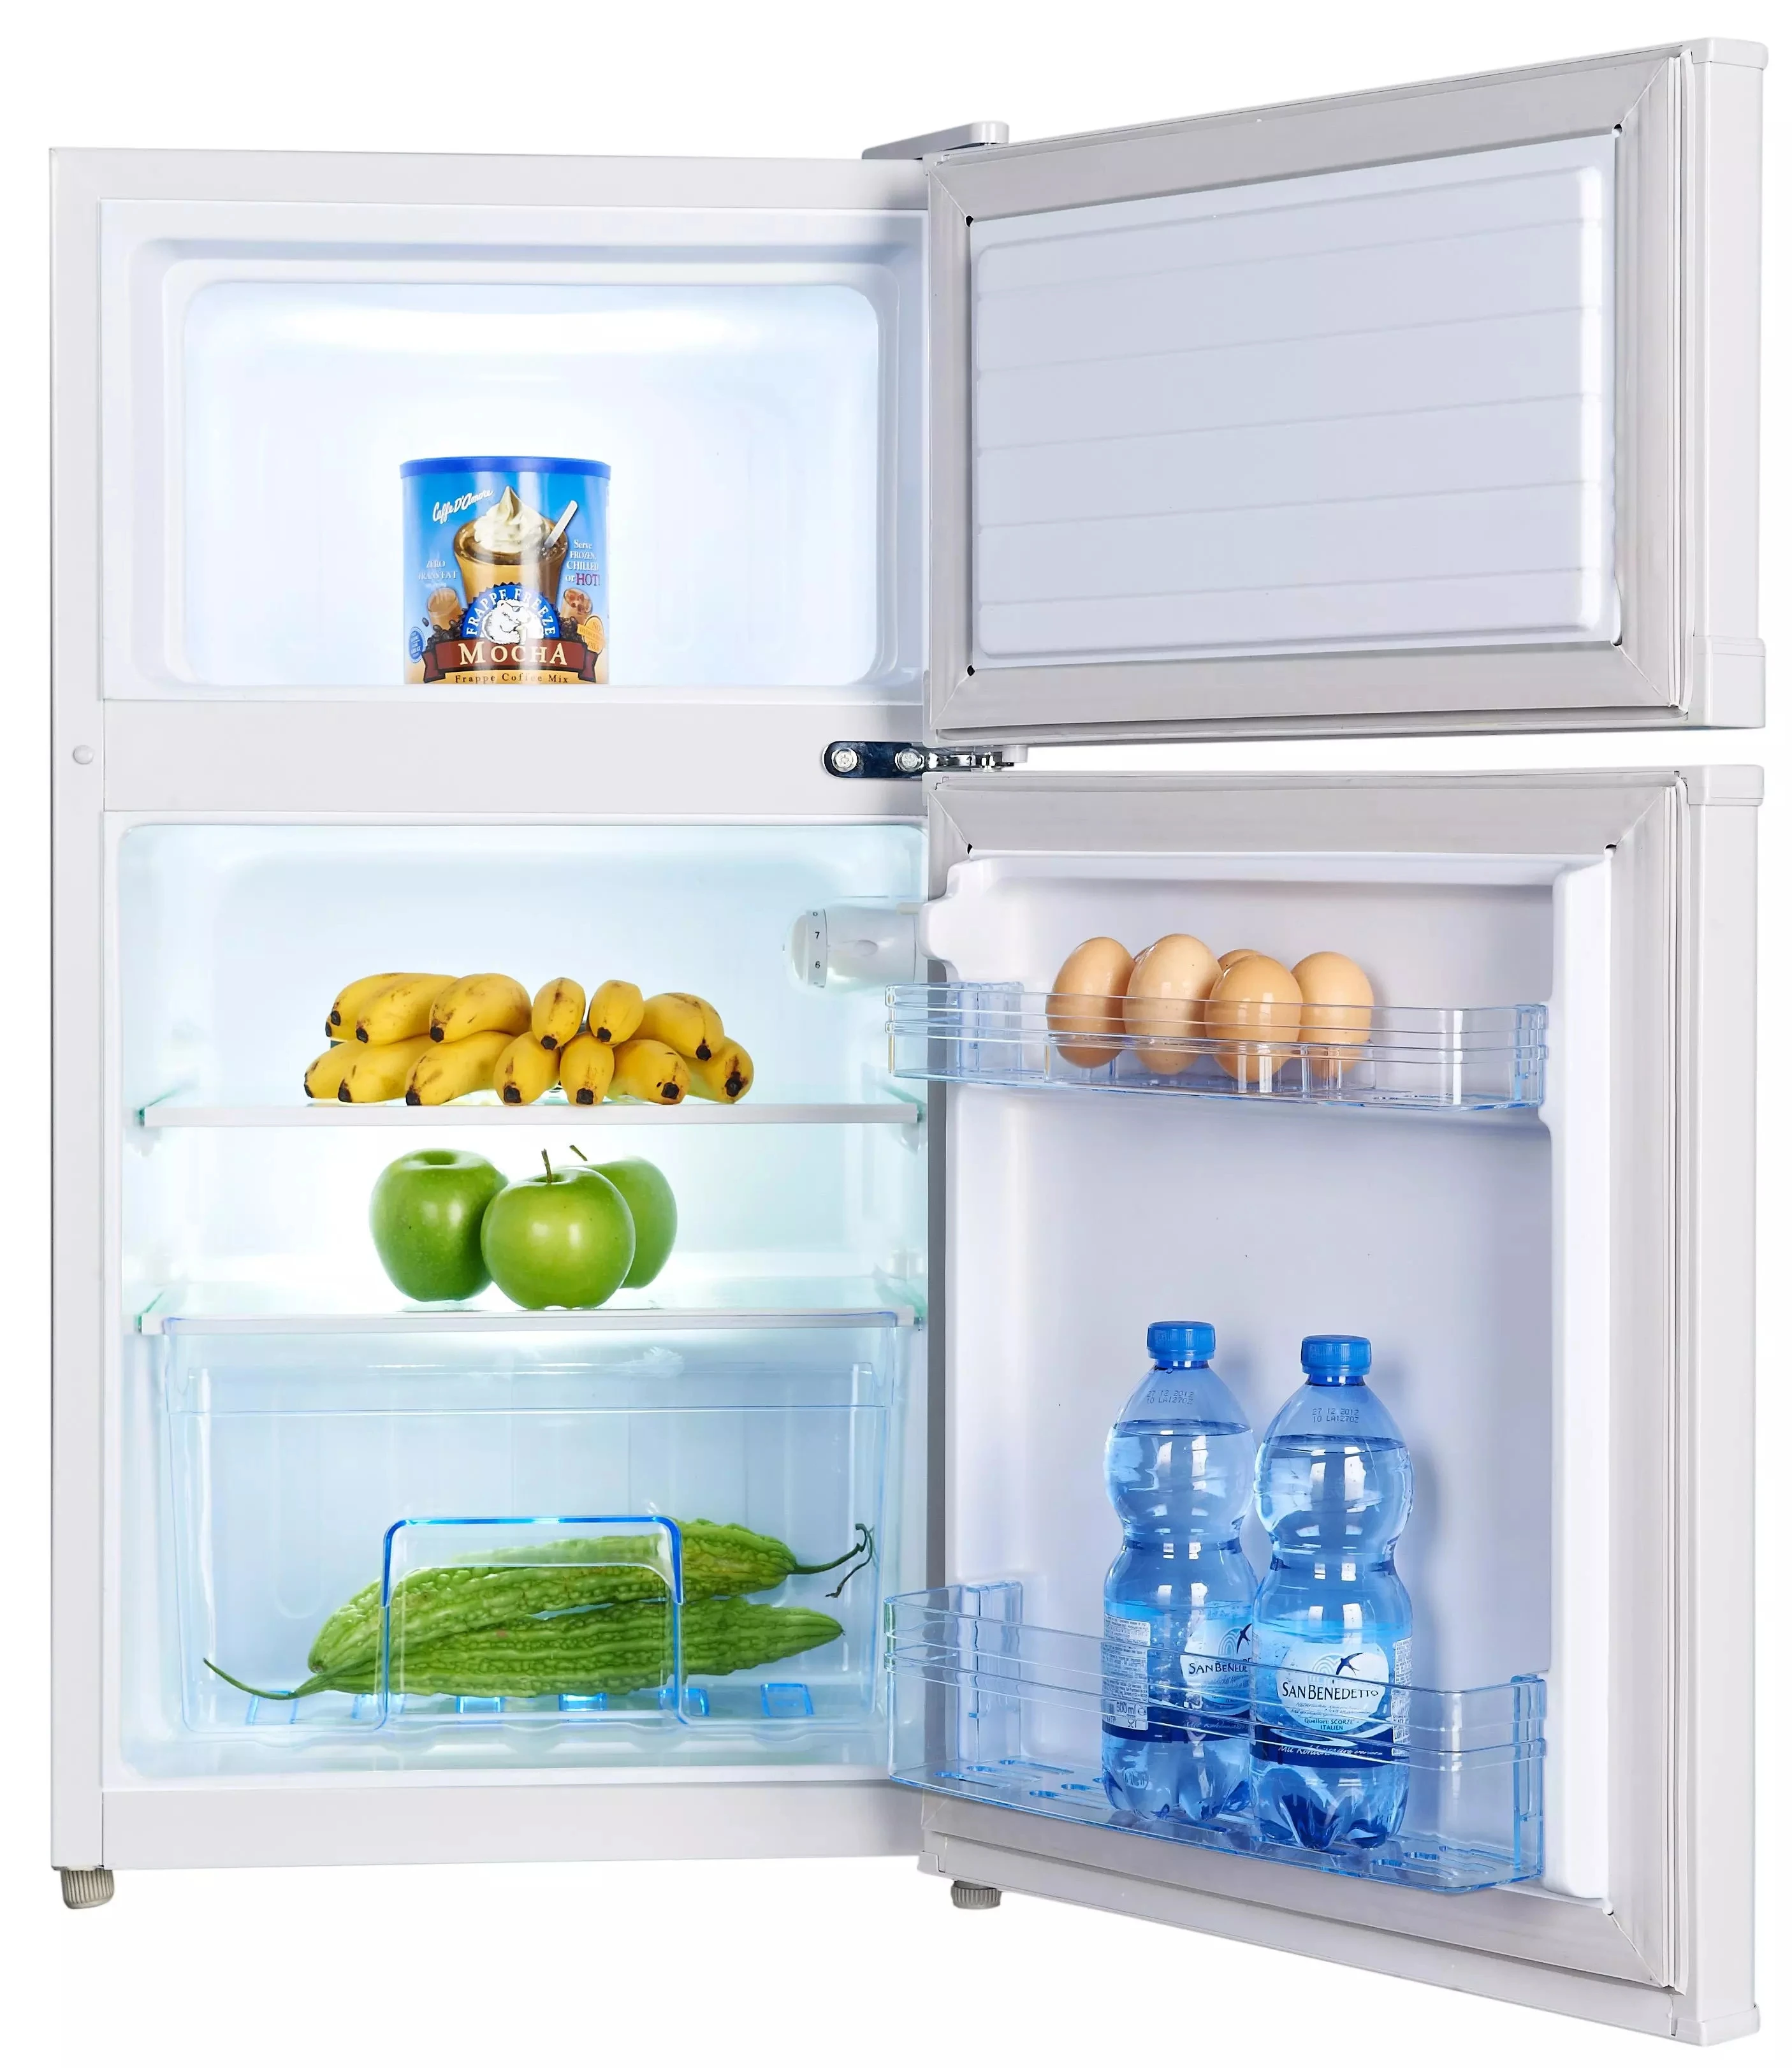 Двухкамерный холодильник морозильник. Shivaki SHRF-91ds. Холодильник Шиваки двухкамерный. Shivaki холодильник маленький двухкамерный. Холодильник Shivaki маленький с морозилкой.